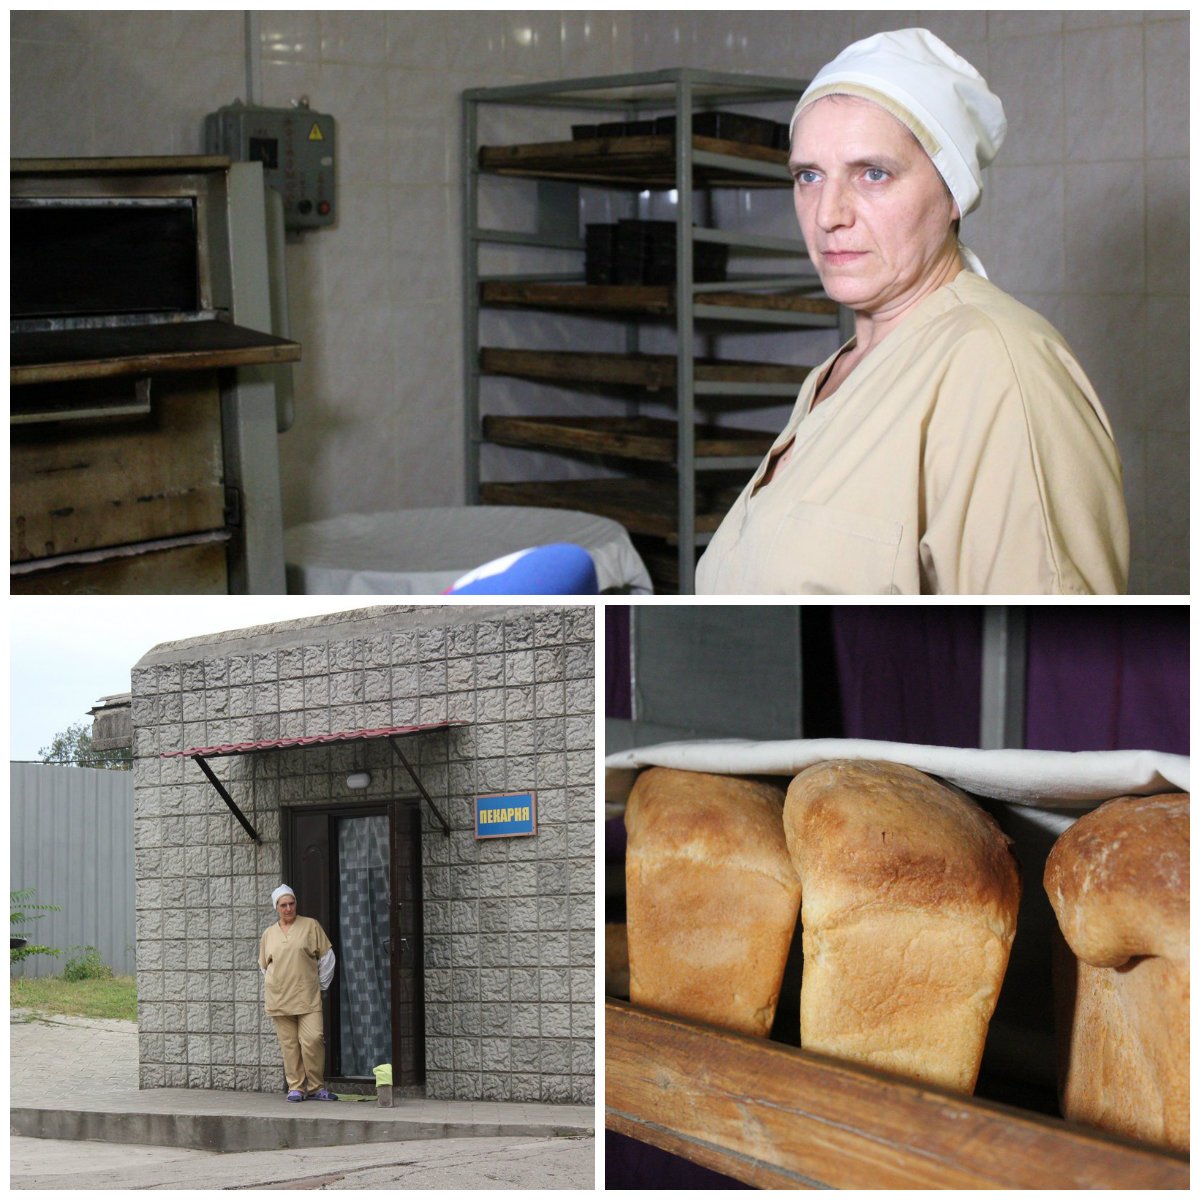 Хлеб выпекает осужденная. Женщина родом из Львова. На свободе ее ждут двое детей 9-ти и 12-ти лет